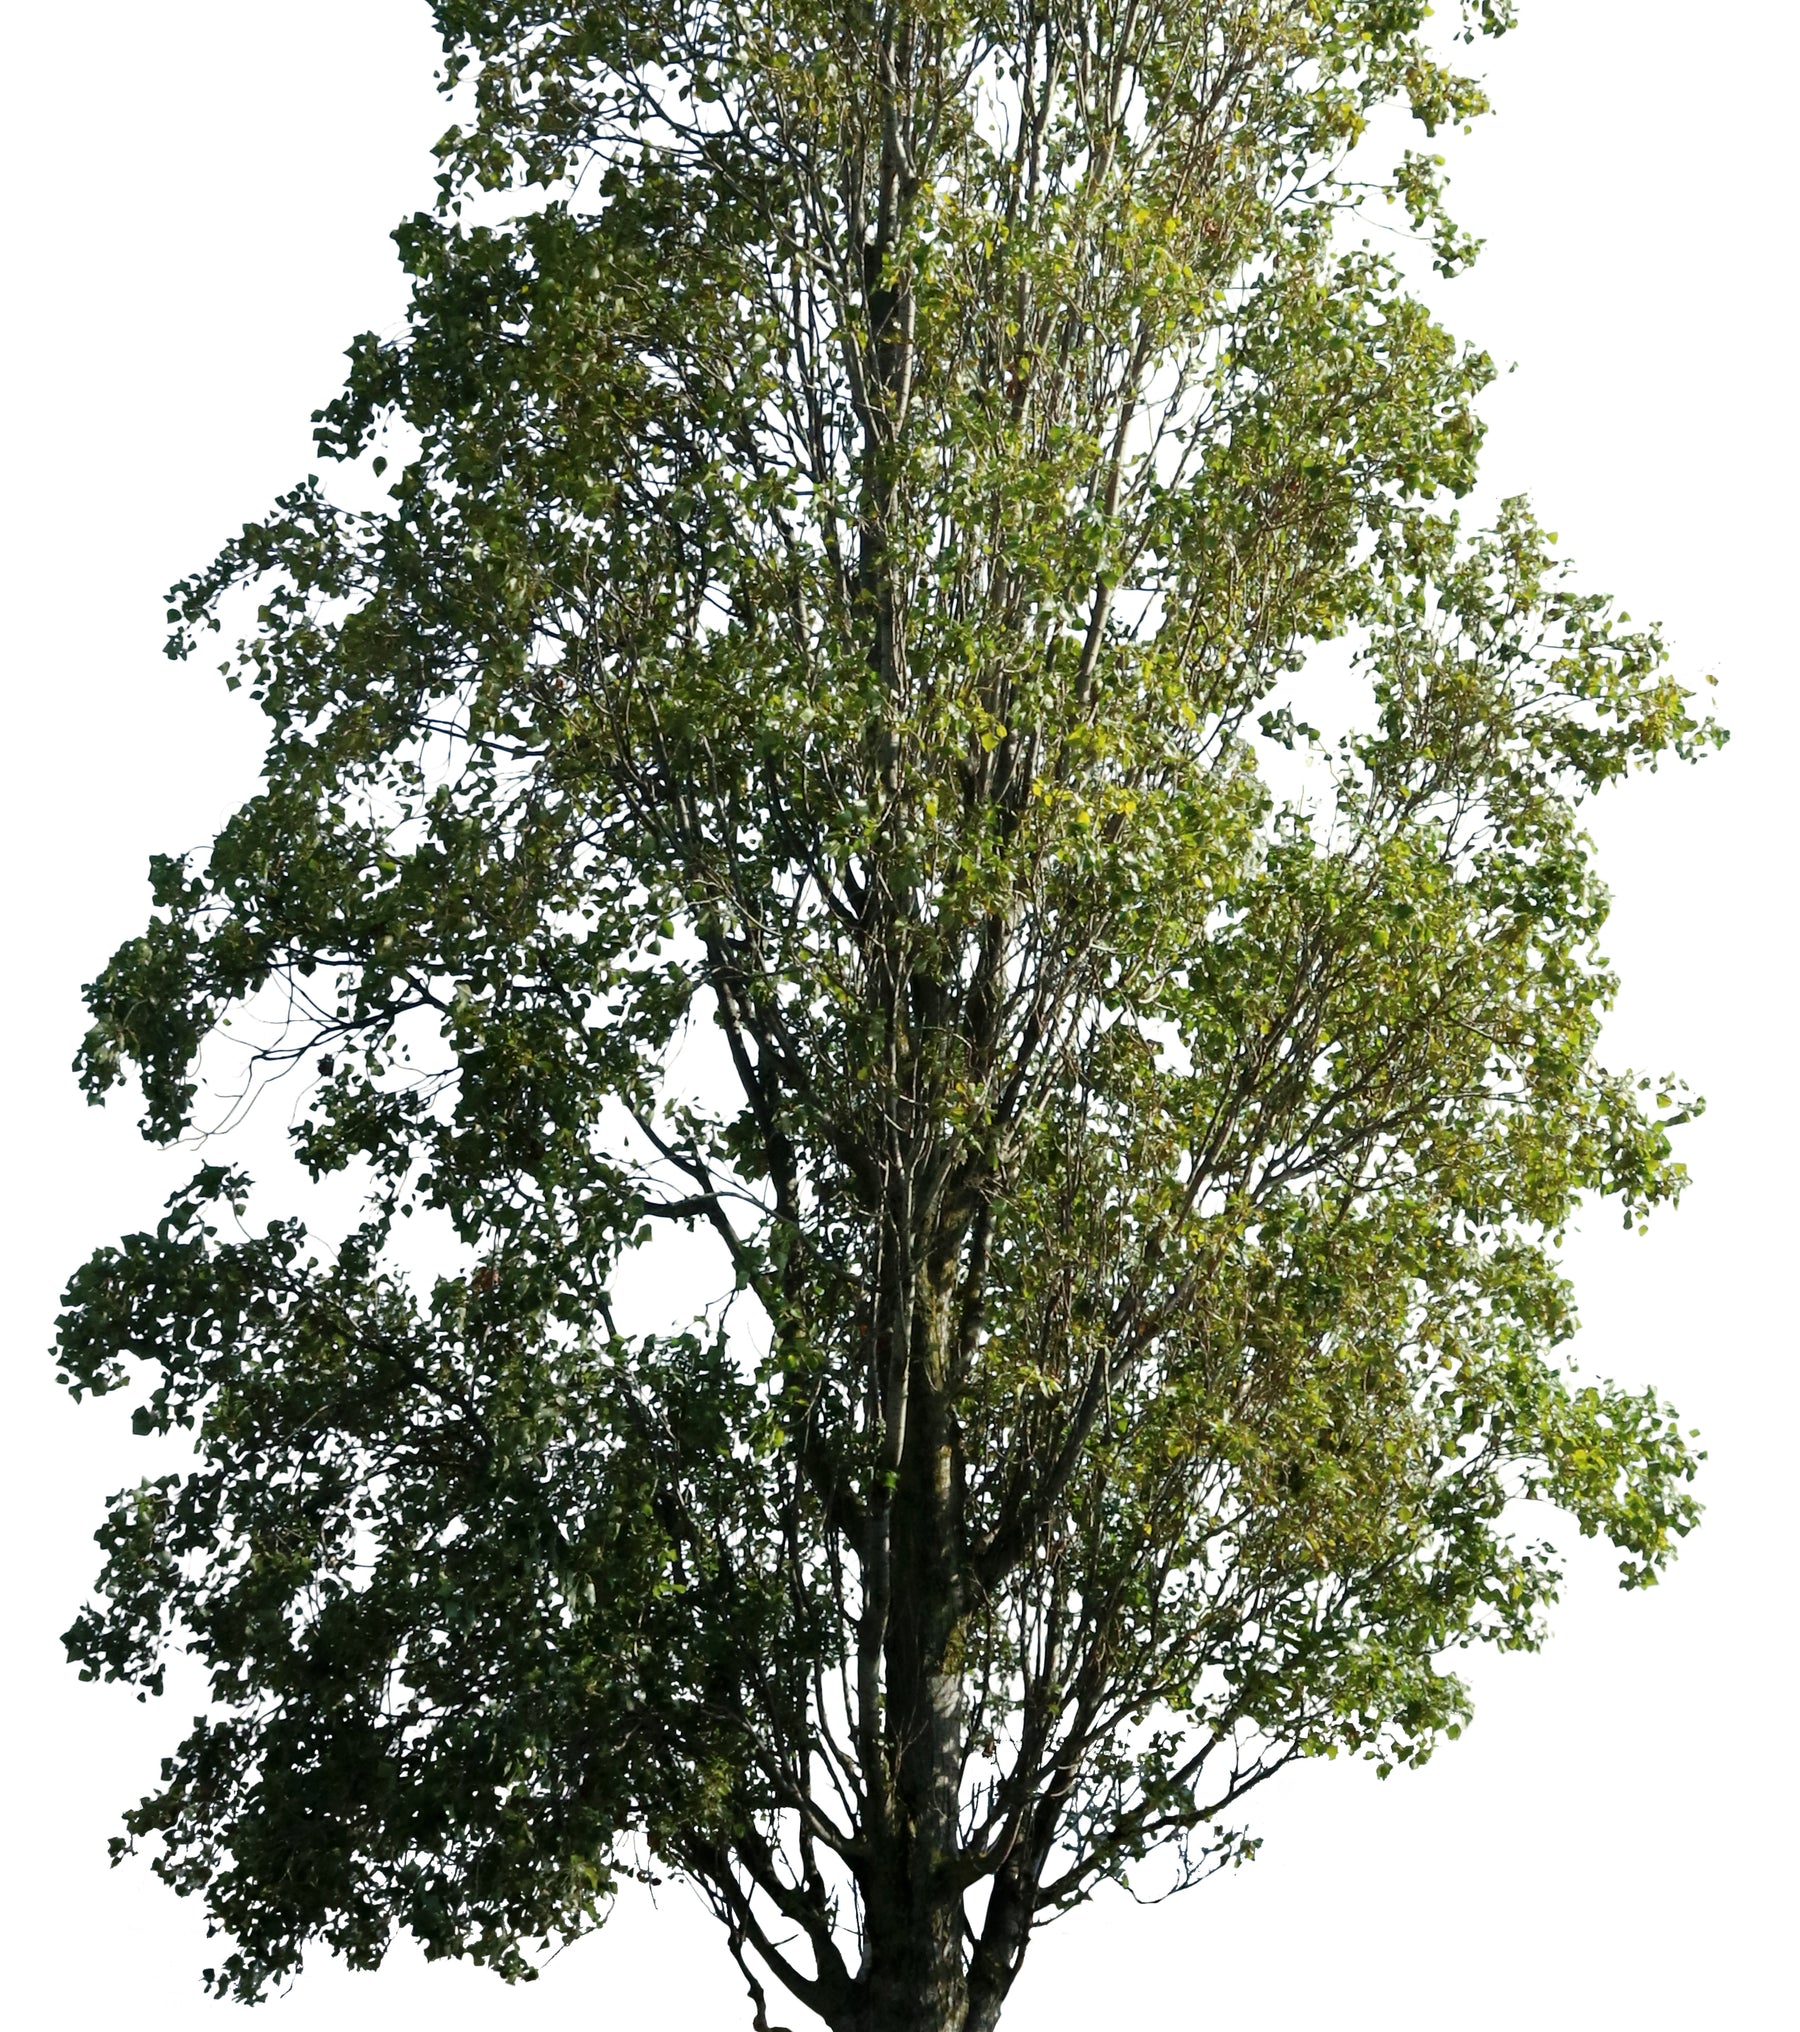 Populus nigra + People - cutout trees